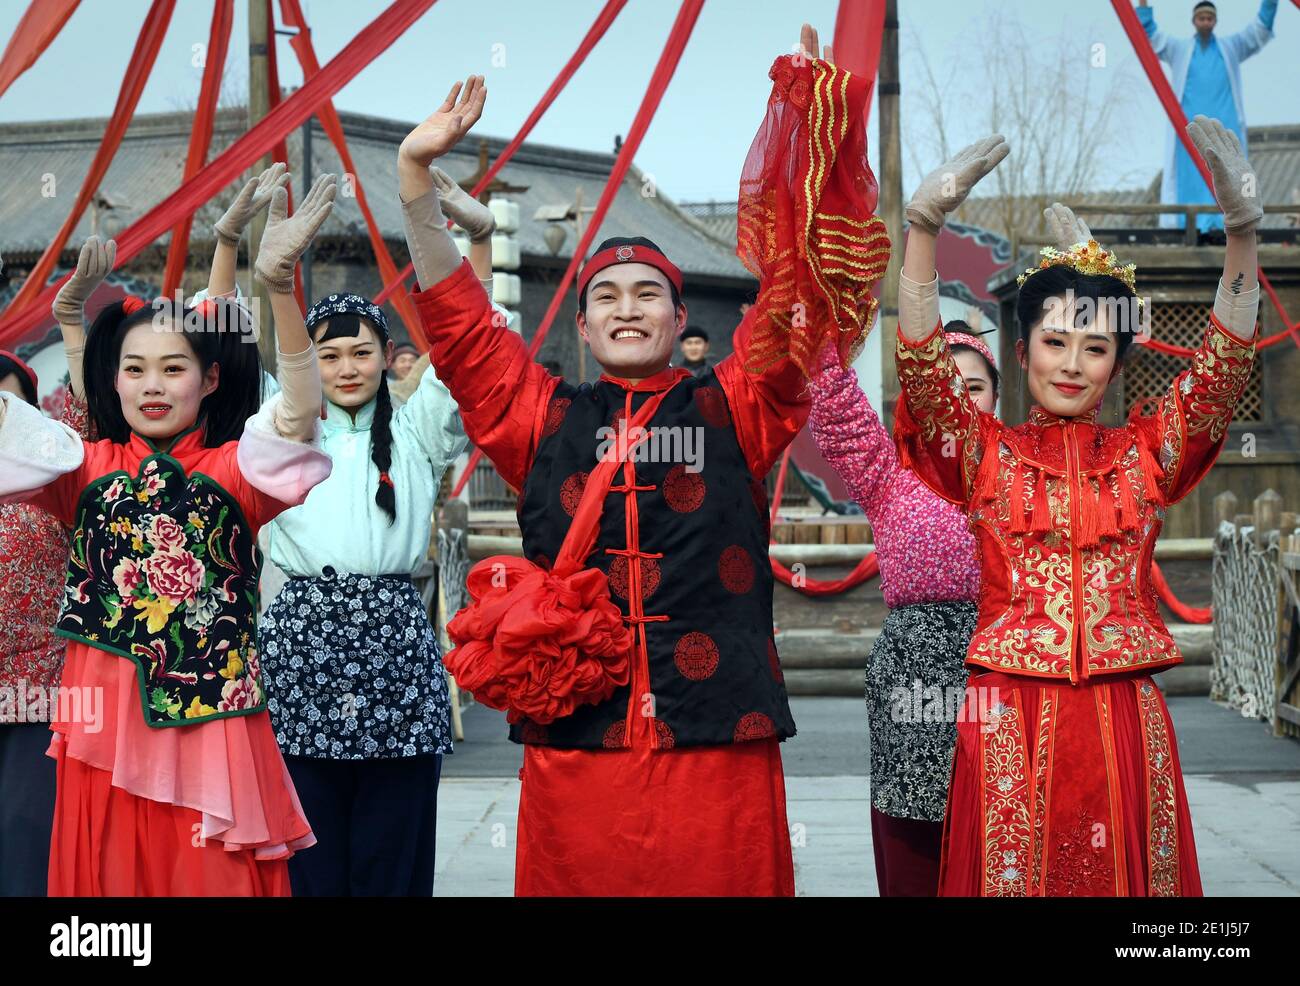 (210107) -- ZHENGZHOU, 7. Januar 2021 (Xinhua) -- Zhou Xin (C, vorne) begrüßt das Publikum nach der Aufführung in einer Filmstadt in Zhengzhou, Provinz Henan in Zentralchina, 5. Januar 2021. Zhou Xin, ein Post-95s-Absolvent des Studiengangs Choreographie an der Sichuan Normal University, verließ seine Heimatstadt in der Provinz Shanxi und kam im April 2020 aus großer Leidenschaft für Film und Schauspiel in die Jianye & H. Brothers Movie Town in Zhengzhou. Von Make-up bis zur Kostümvorbereitung, von der Probe bis zur formalen Aufführung, Zhou ist gewissenhaft in Bezug auf jedes Detail. Zhou gehört zu den 185 Schauspielern und Schauspielerinnen, die ihm nachjagen Stockfoto